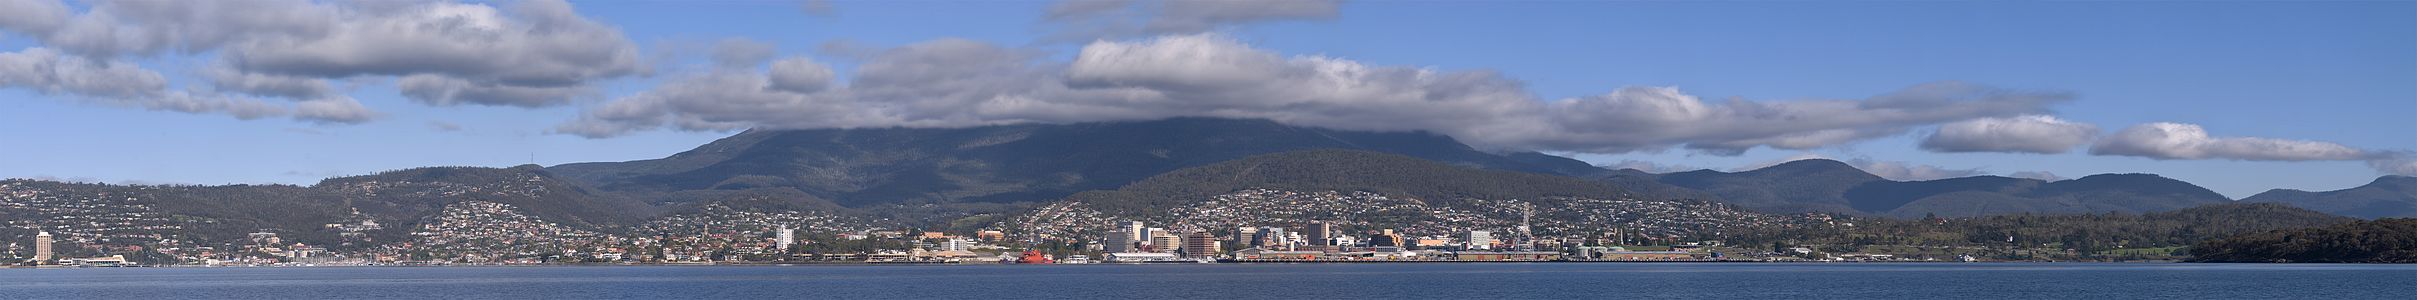 Avustralya'nın Tazmanya eyaletinin idarî merkezi ve en büyük şehri olan Hobart'ta Sandy Körfezi (sol) - Hobart Domain (sağ) arasındaki bölge. (Üreten: Flying Freddy)